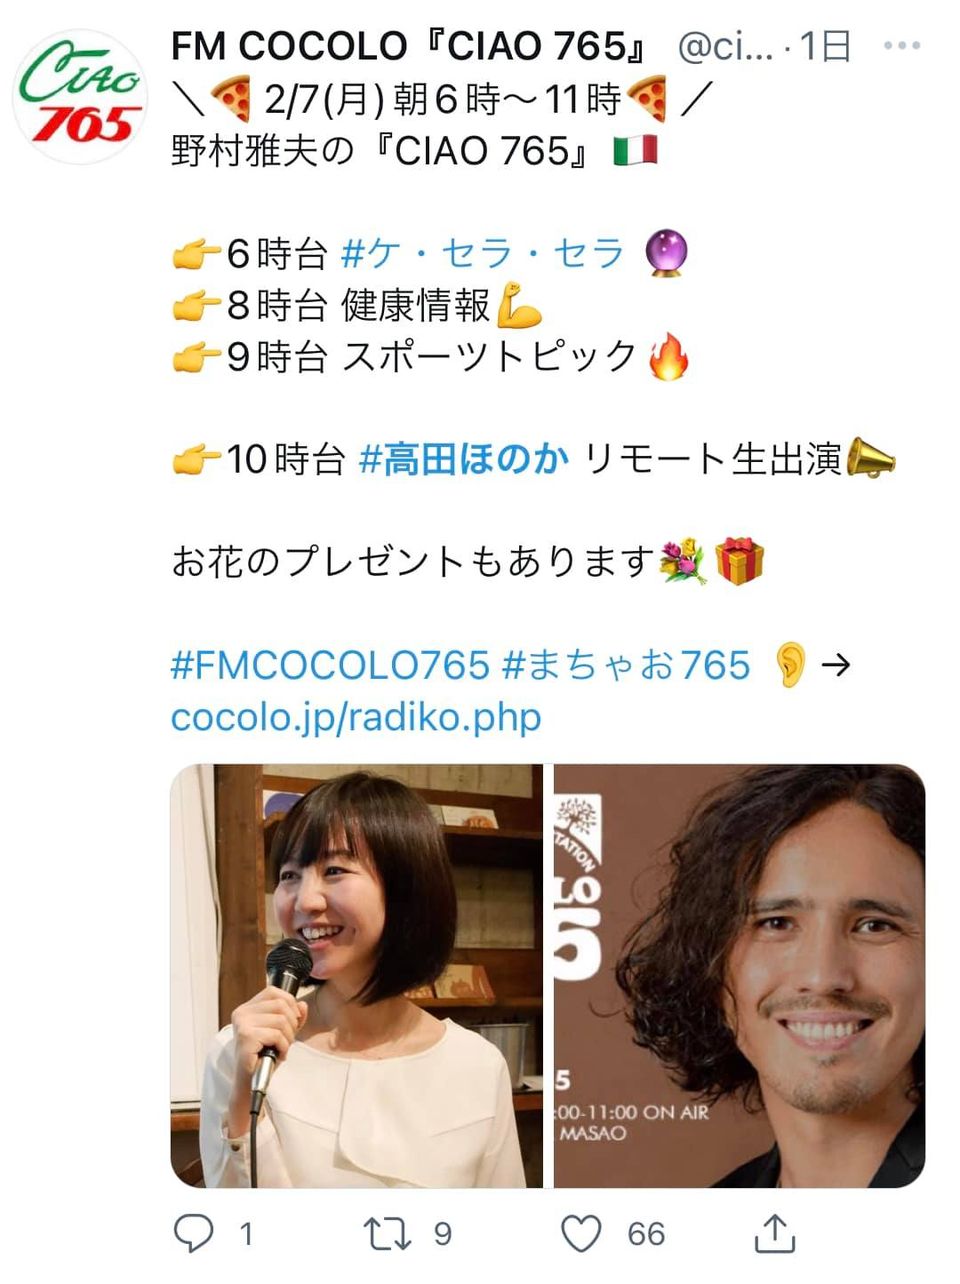 FM COCOLOのDJ、野村雅夫こと、まちゃおさんの CIAO 765にリモートで生出演させていただきました。